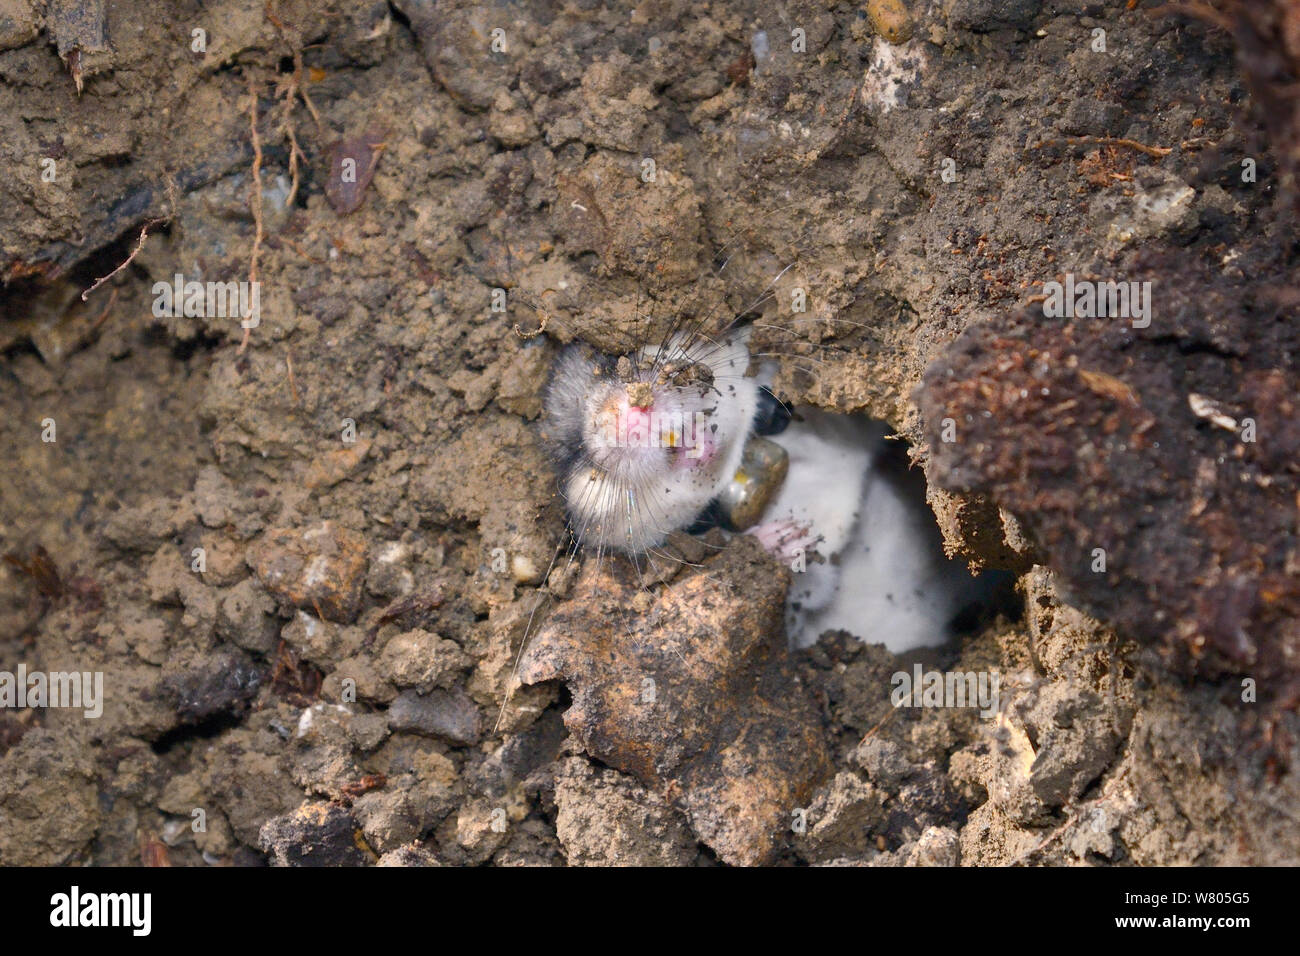 Radio-collared / comestible lirón gris (GLIS GLIS) en su madriguera de hibernación invernal, excavado durante un estudio realizado en el bosque donde esta especie europea ha llegado a naturalizarse, Buckinghamshire, REINO UNIDO, Abril. Foto de stock